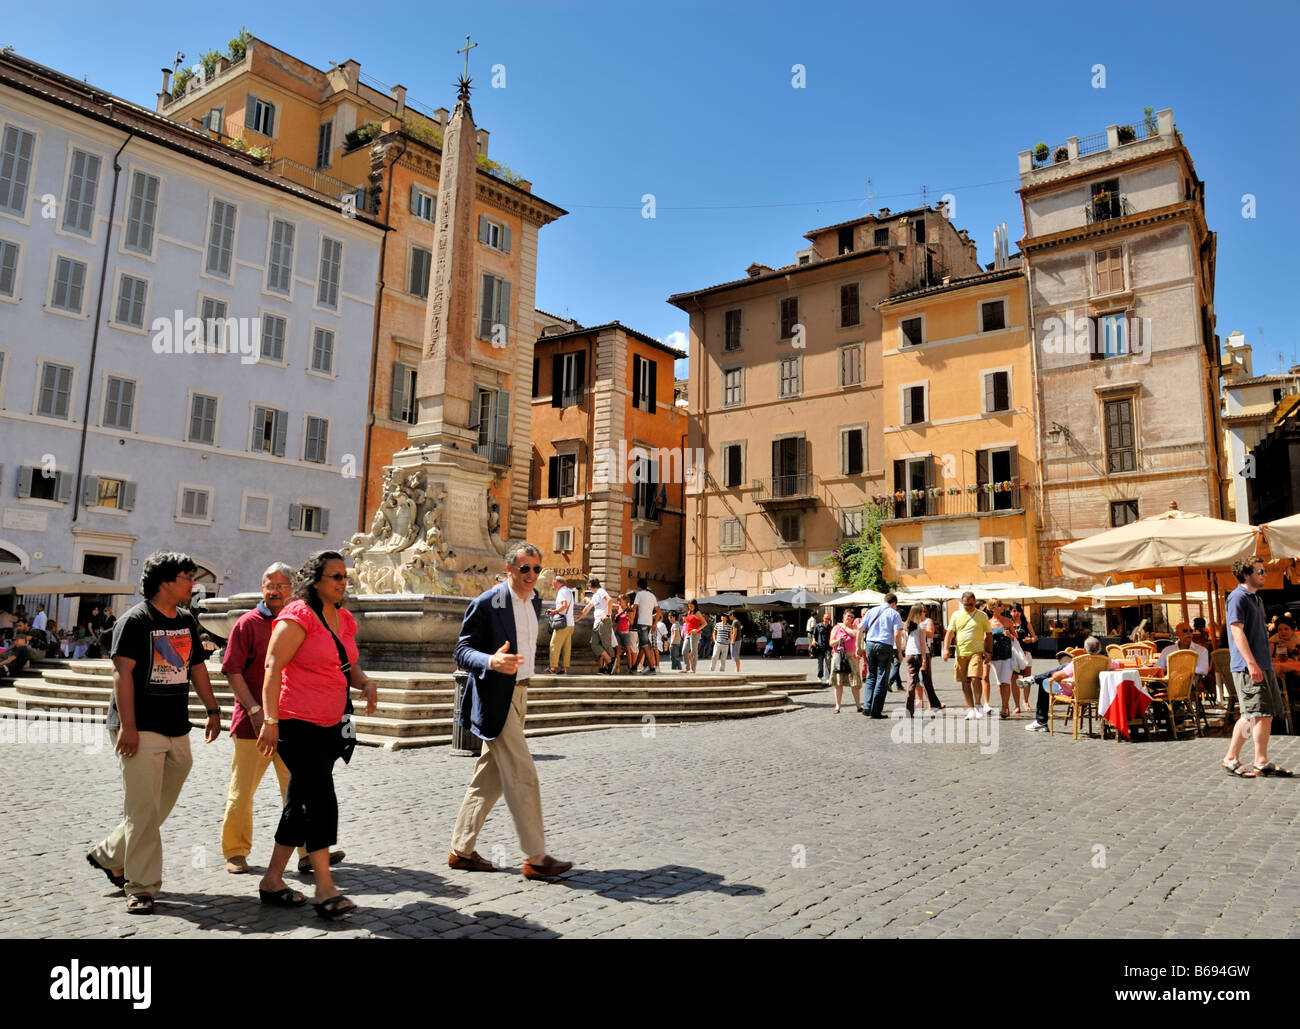 Piazza della Rotonda, obelisk, fountain and colourful buildings, Rome, Lazio, Italy, Europe. Stock Photo